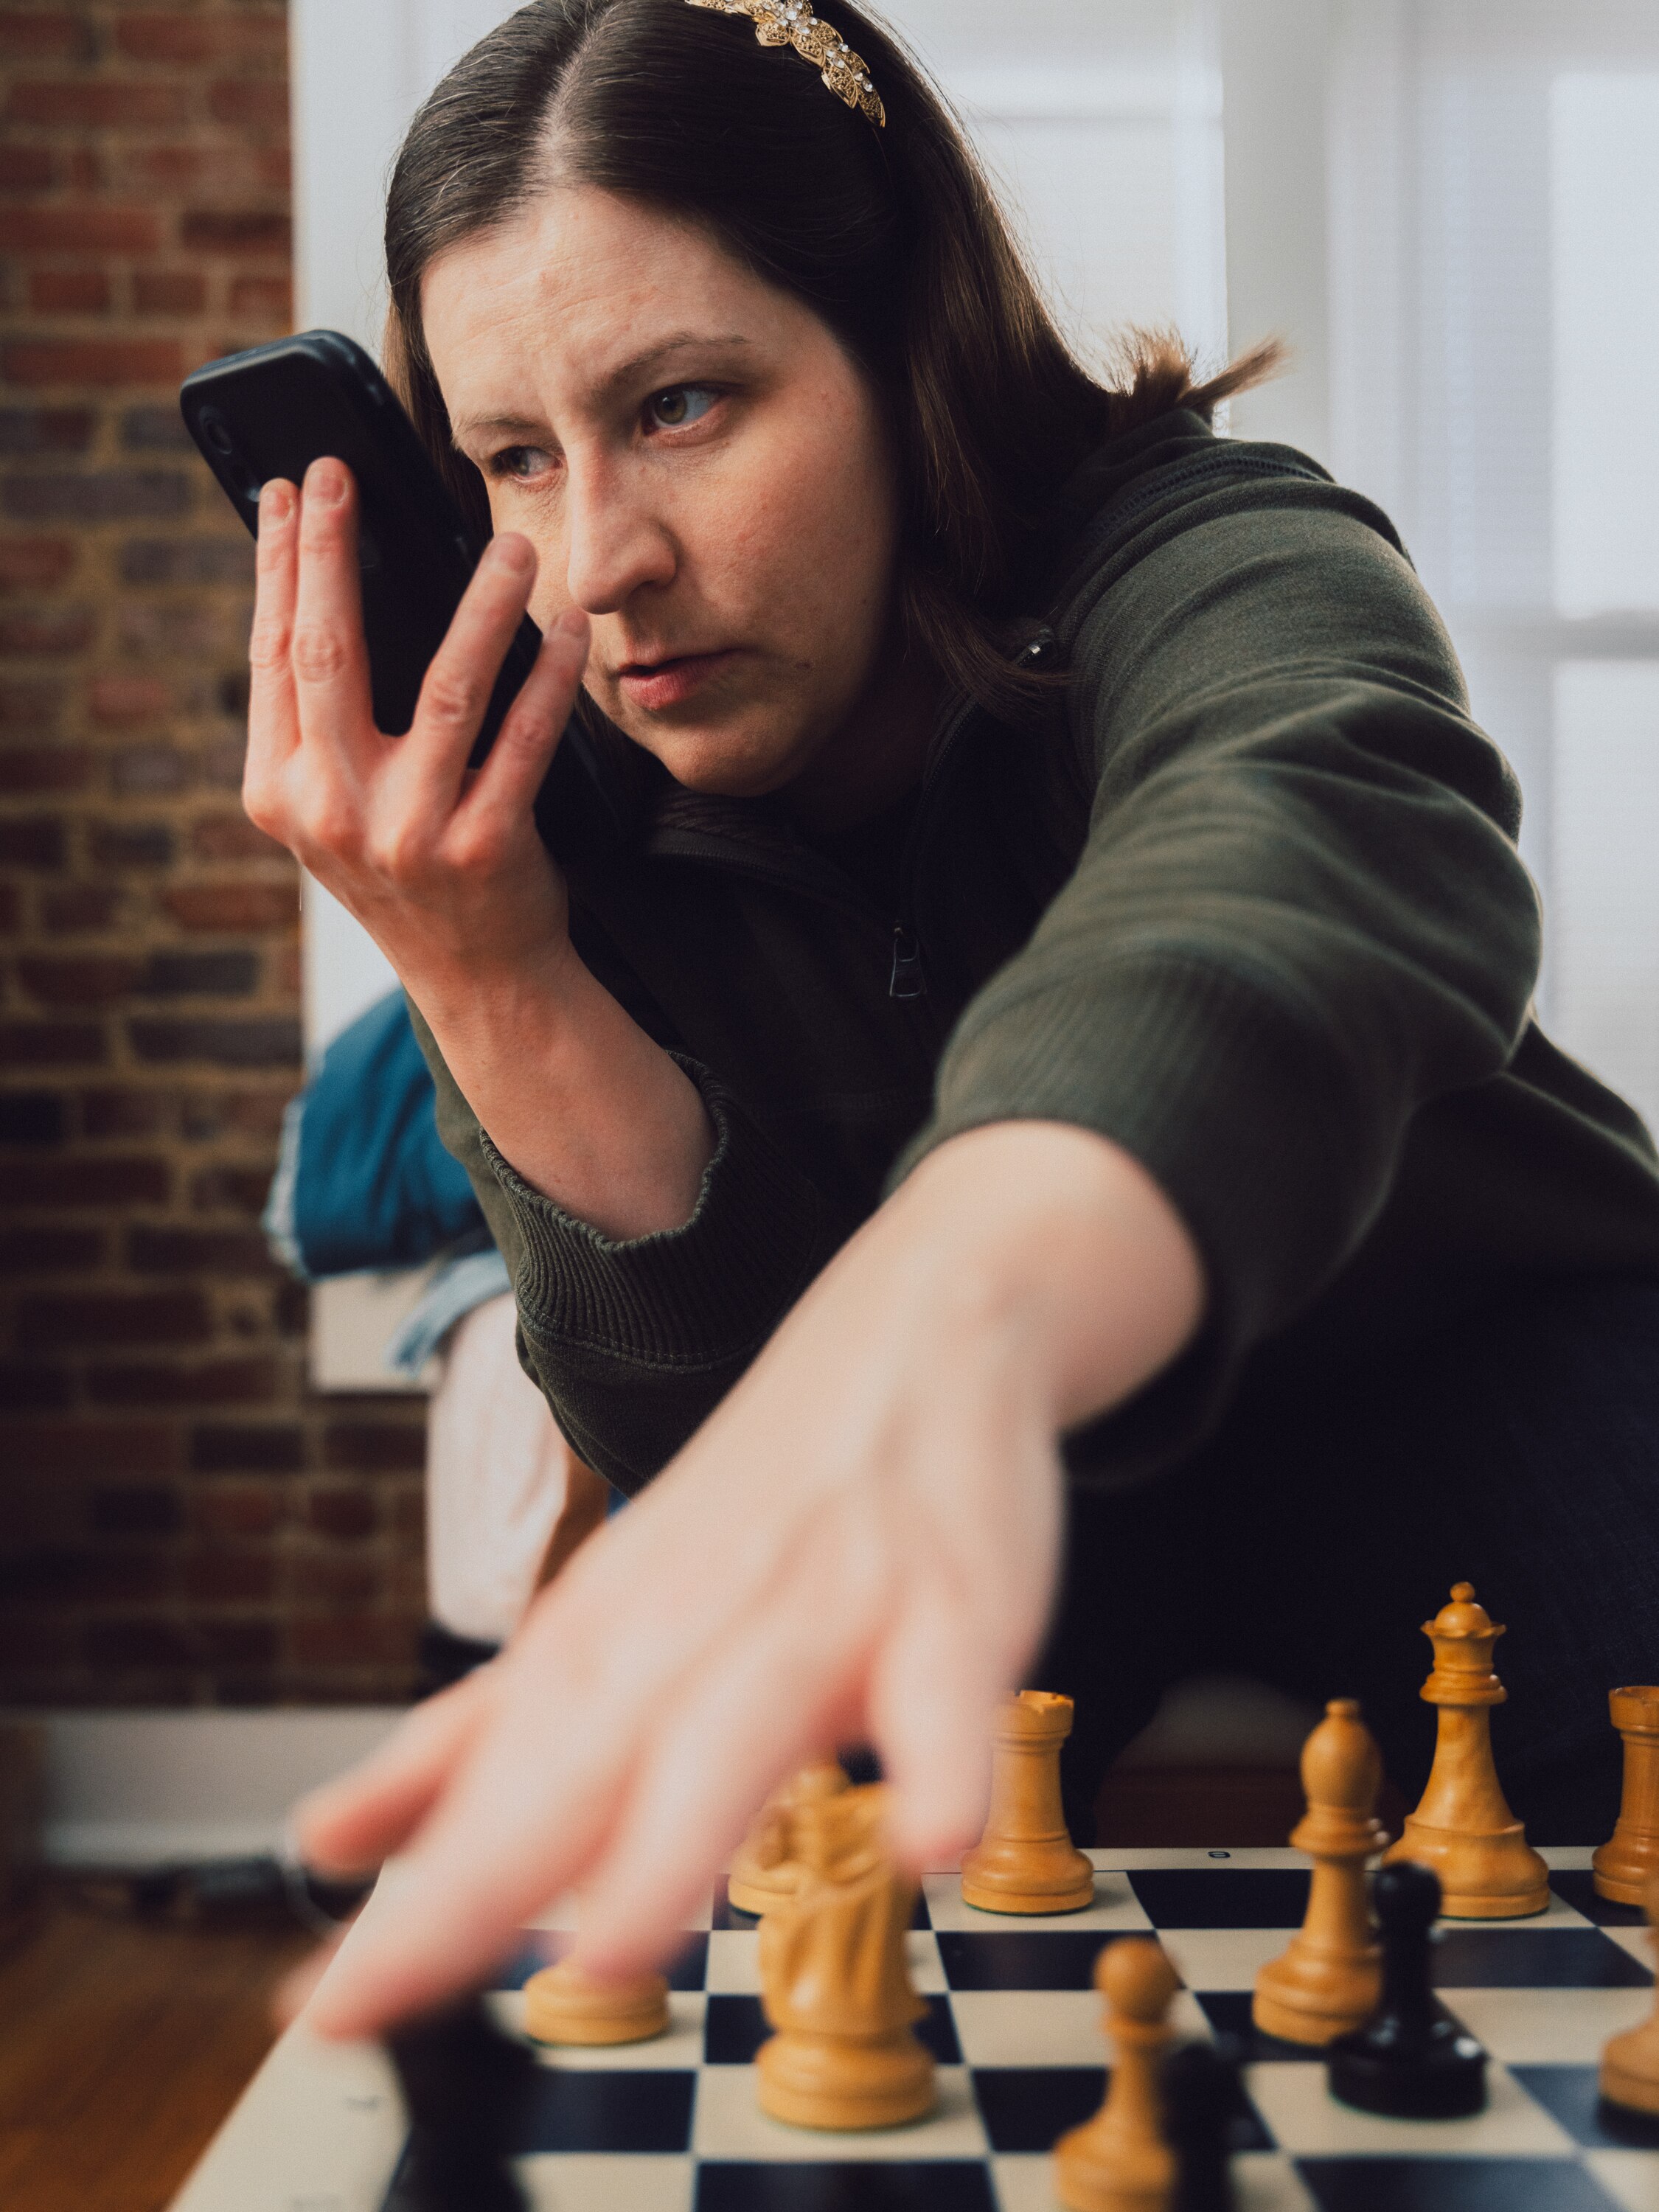 Ela é uma campeã de xadrez que mal consegue enxergar o tabuleiro - Estadão